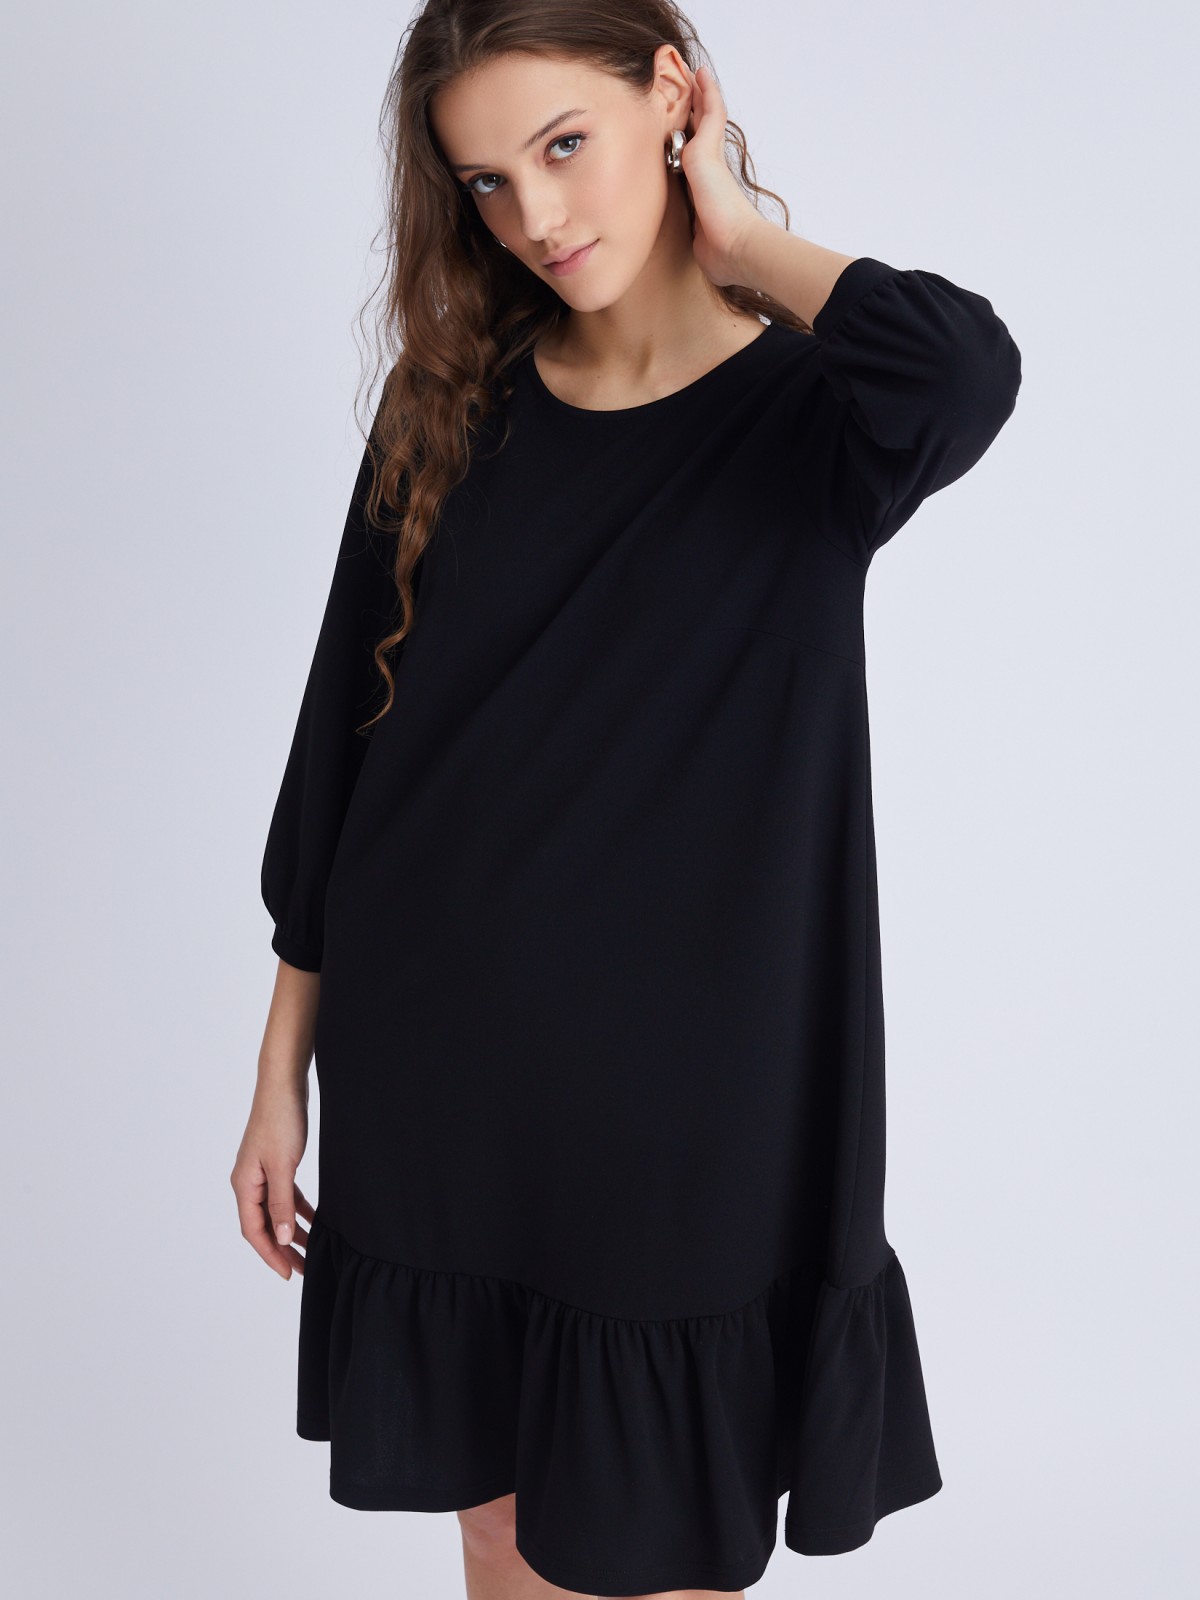 Платье А-силуэта длины мини с воланом zolla 02333819F203, цвет черный, размер S - фото 1